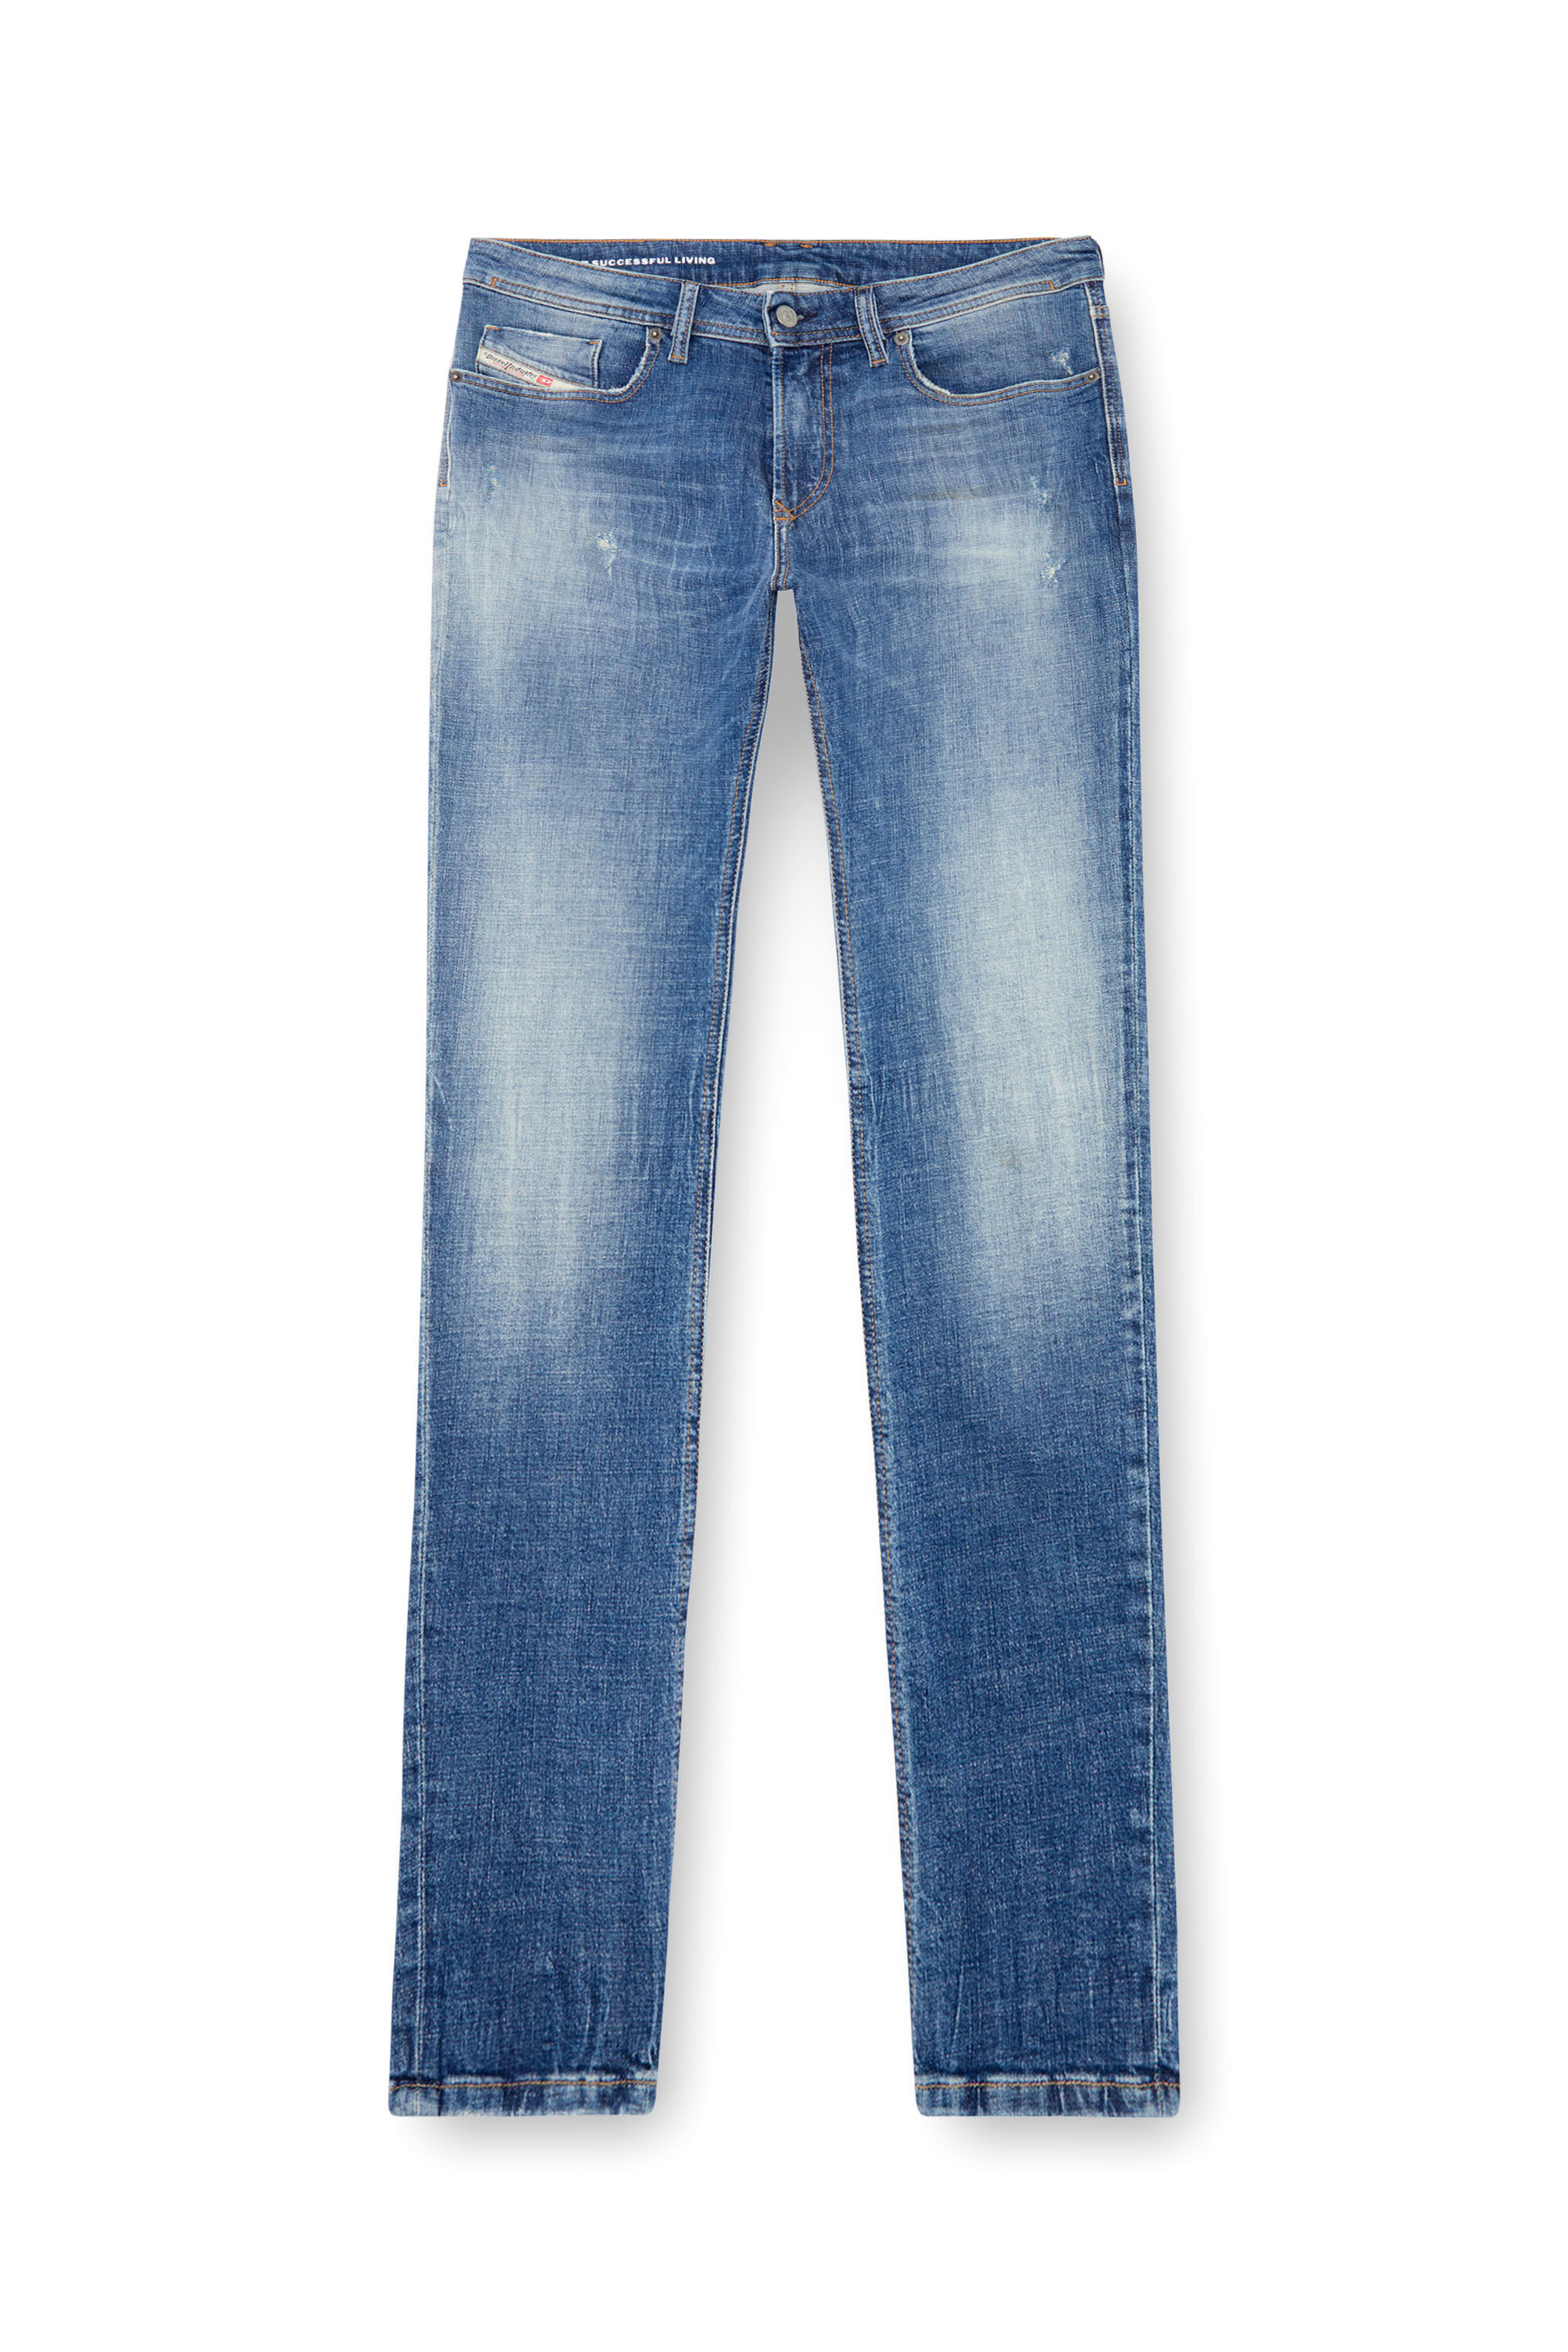 Diesel - Man Skinny Jeans 1979 Sleenker 0GRDF, Medium blue - Image 2